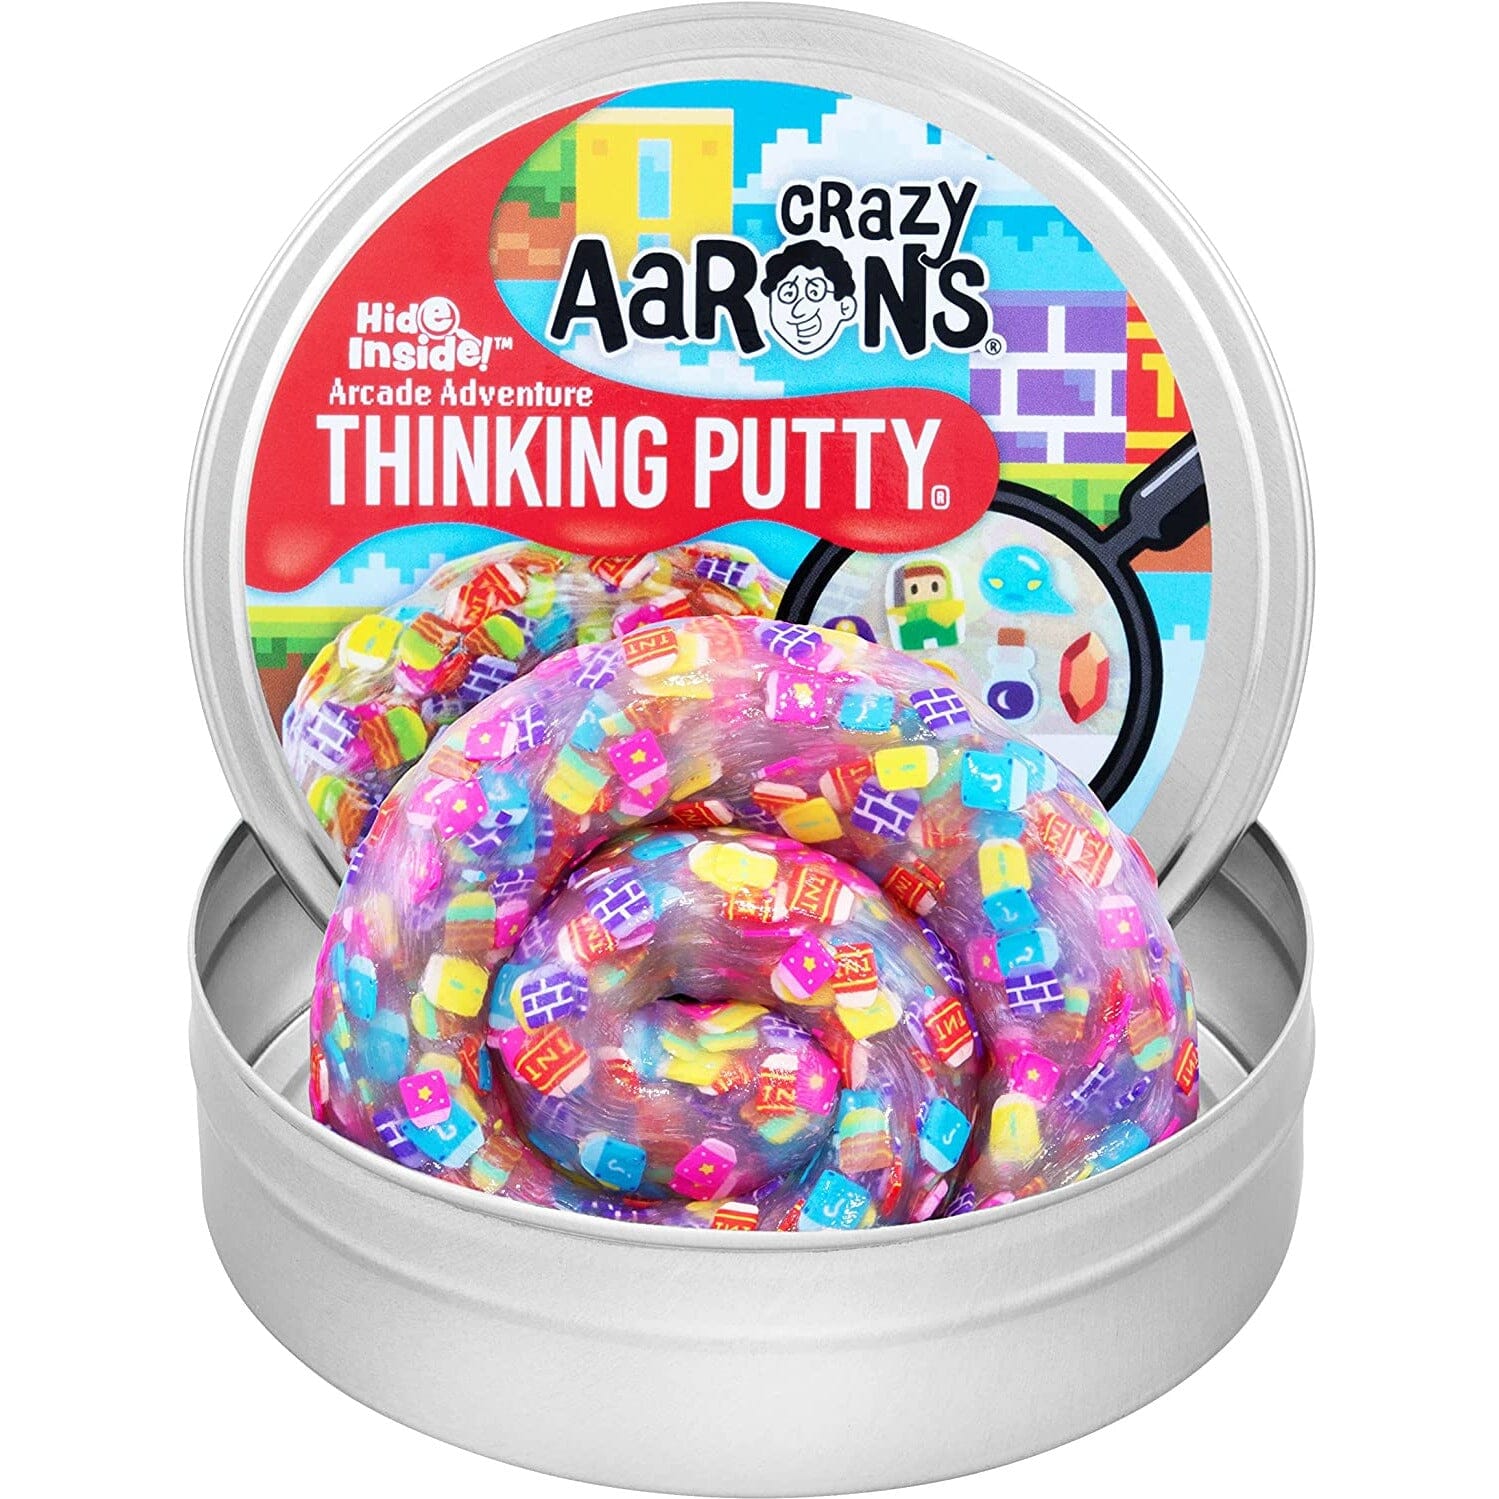 Crazy Aaron's Hide Inside!® Putty -- Arcade Adventure